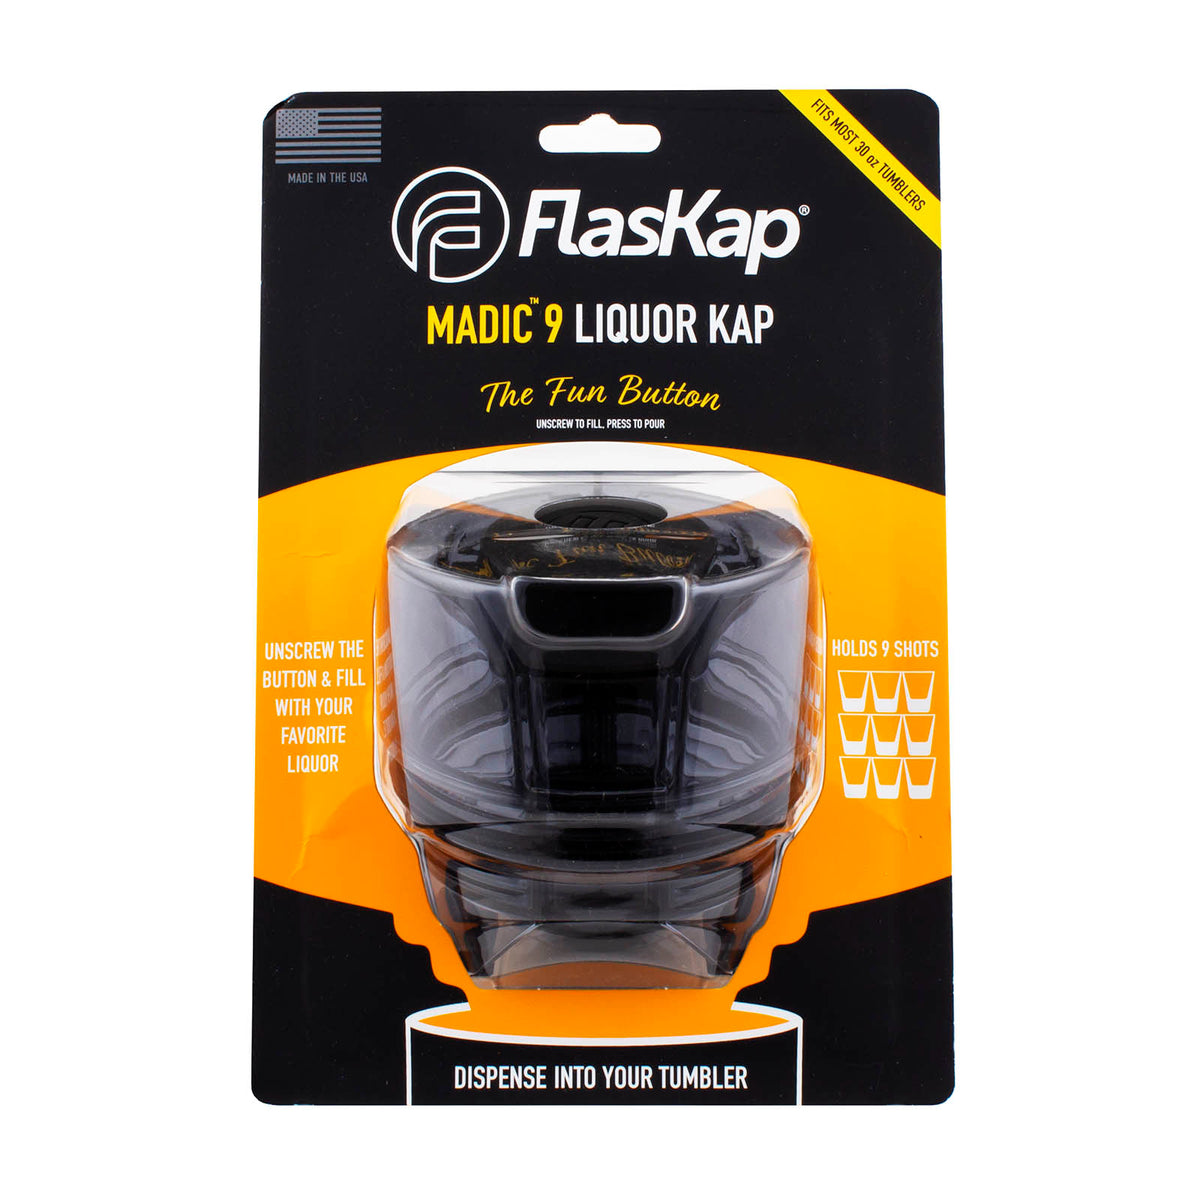 FlasKap Madic 6 - Black